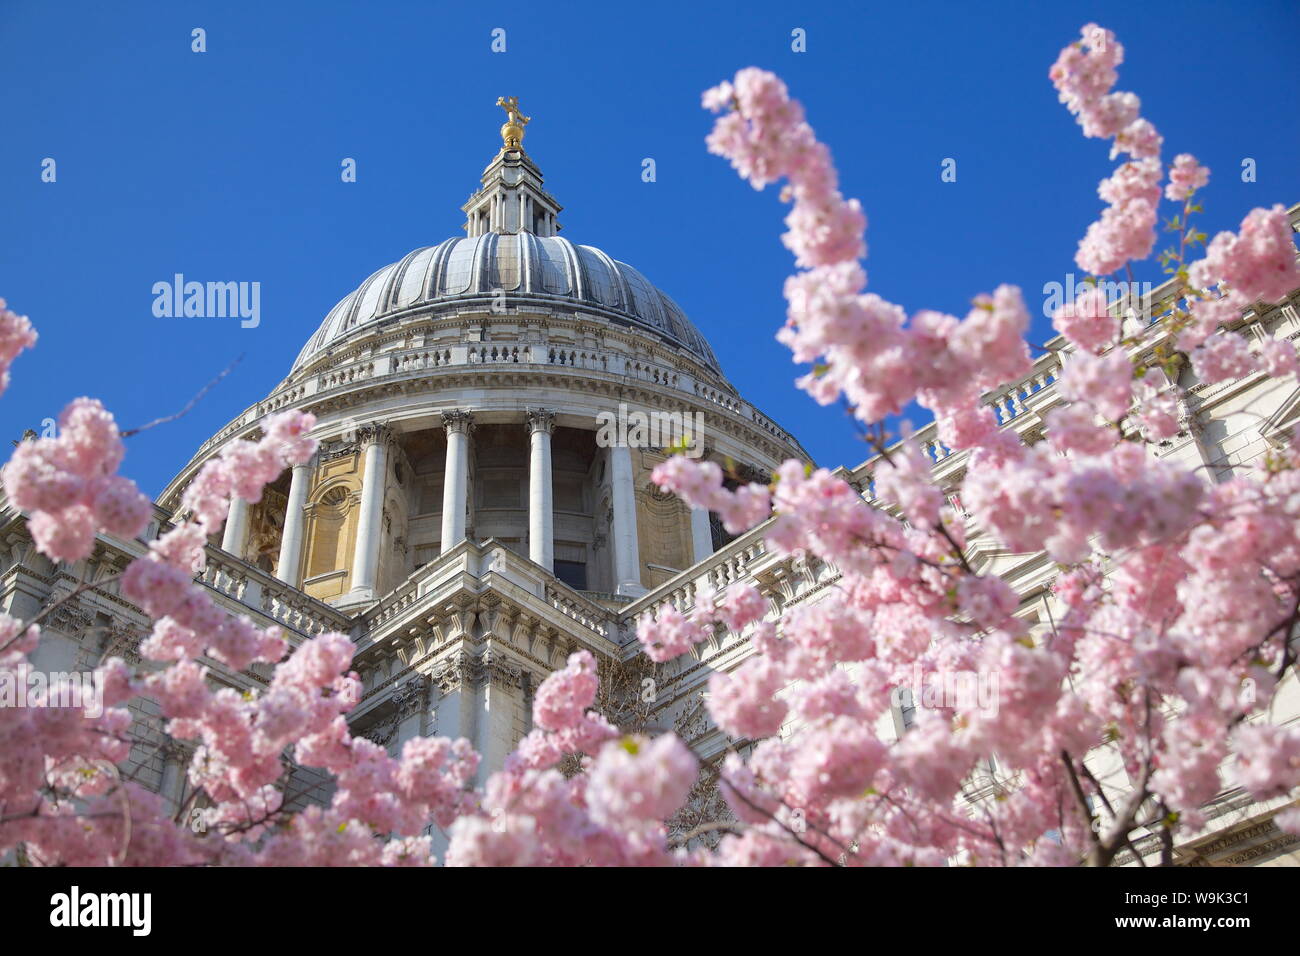 La Cathédrale St Paul et fleur de printemps, Londres, Angleterre, Royaume-Uni, Europe Banque D'Images